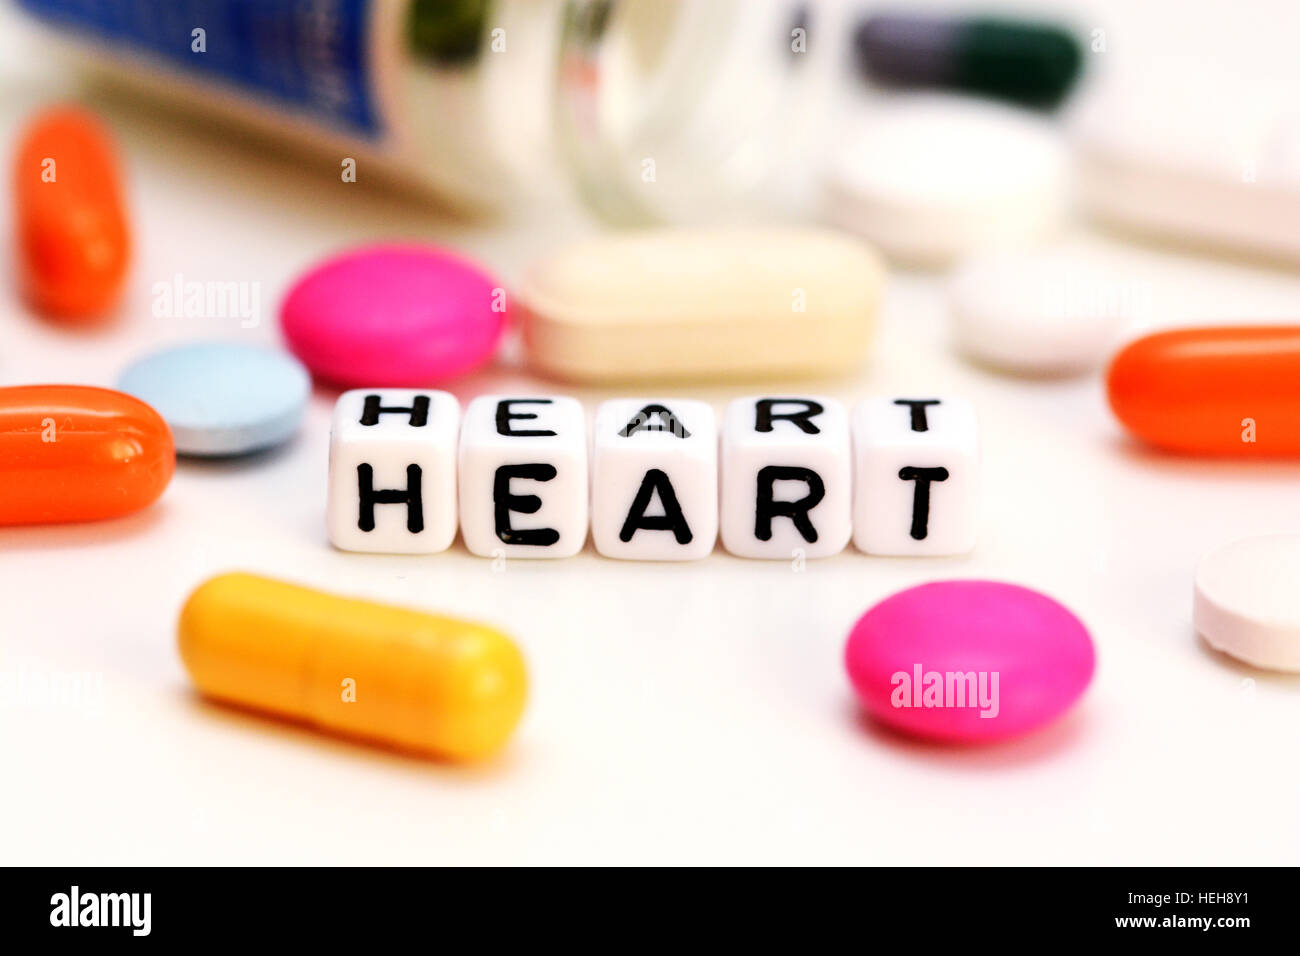 Médicaments et multicolore lettres orthographe coeur, suggérant des problèmes cardiaques Banque D'Images